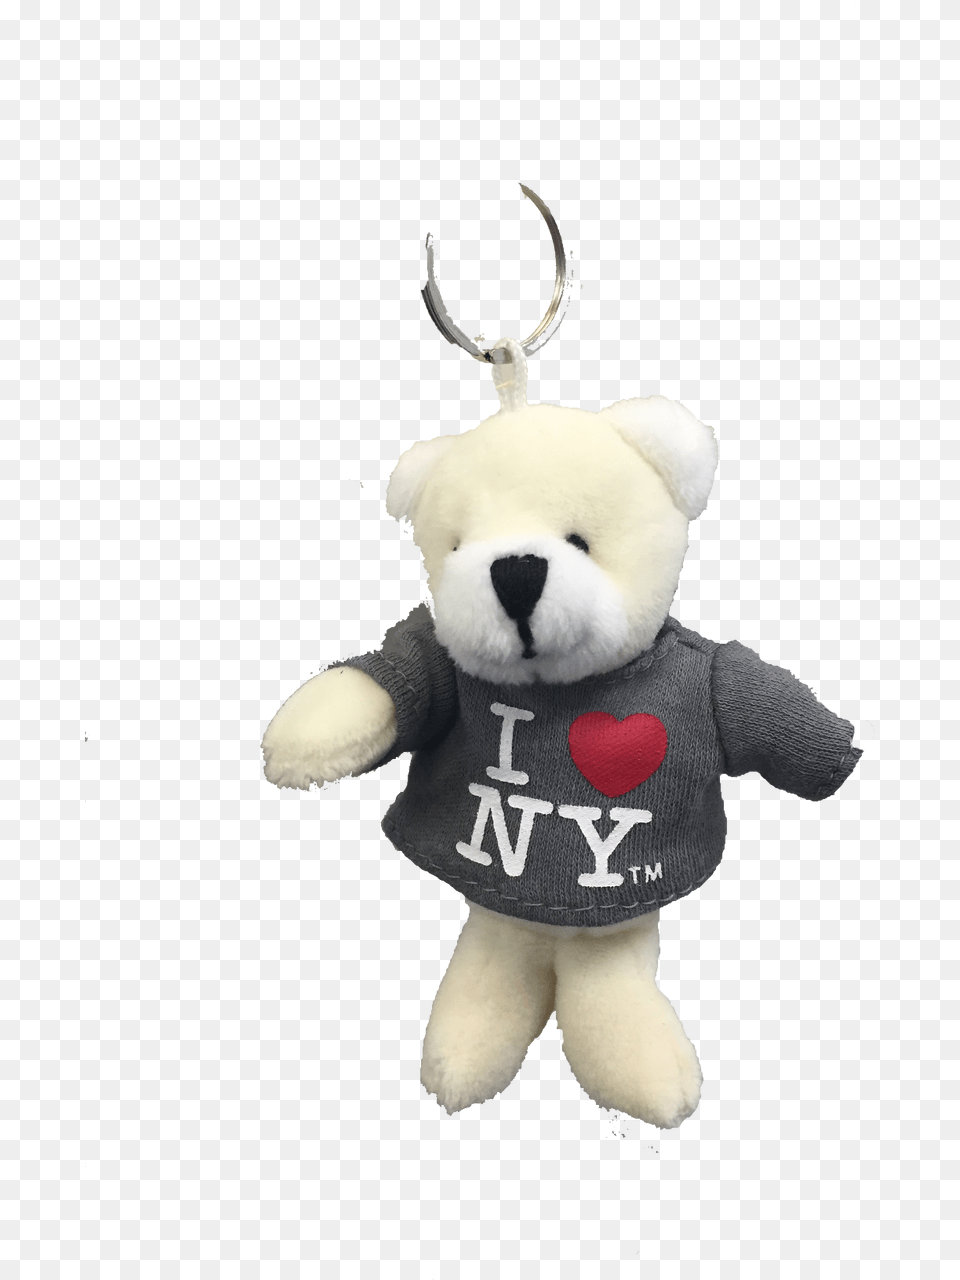 I Love Ny, Plush, Toy, Teddy Bear Free Png